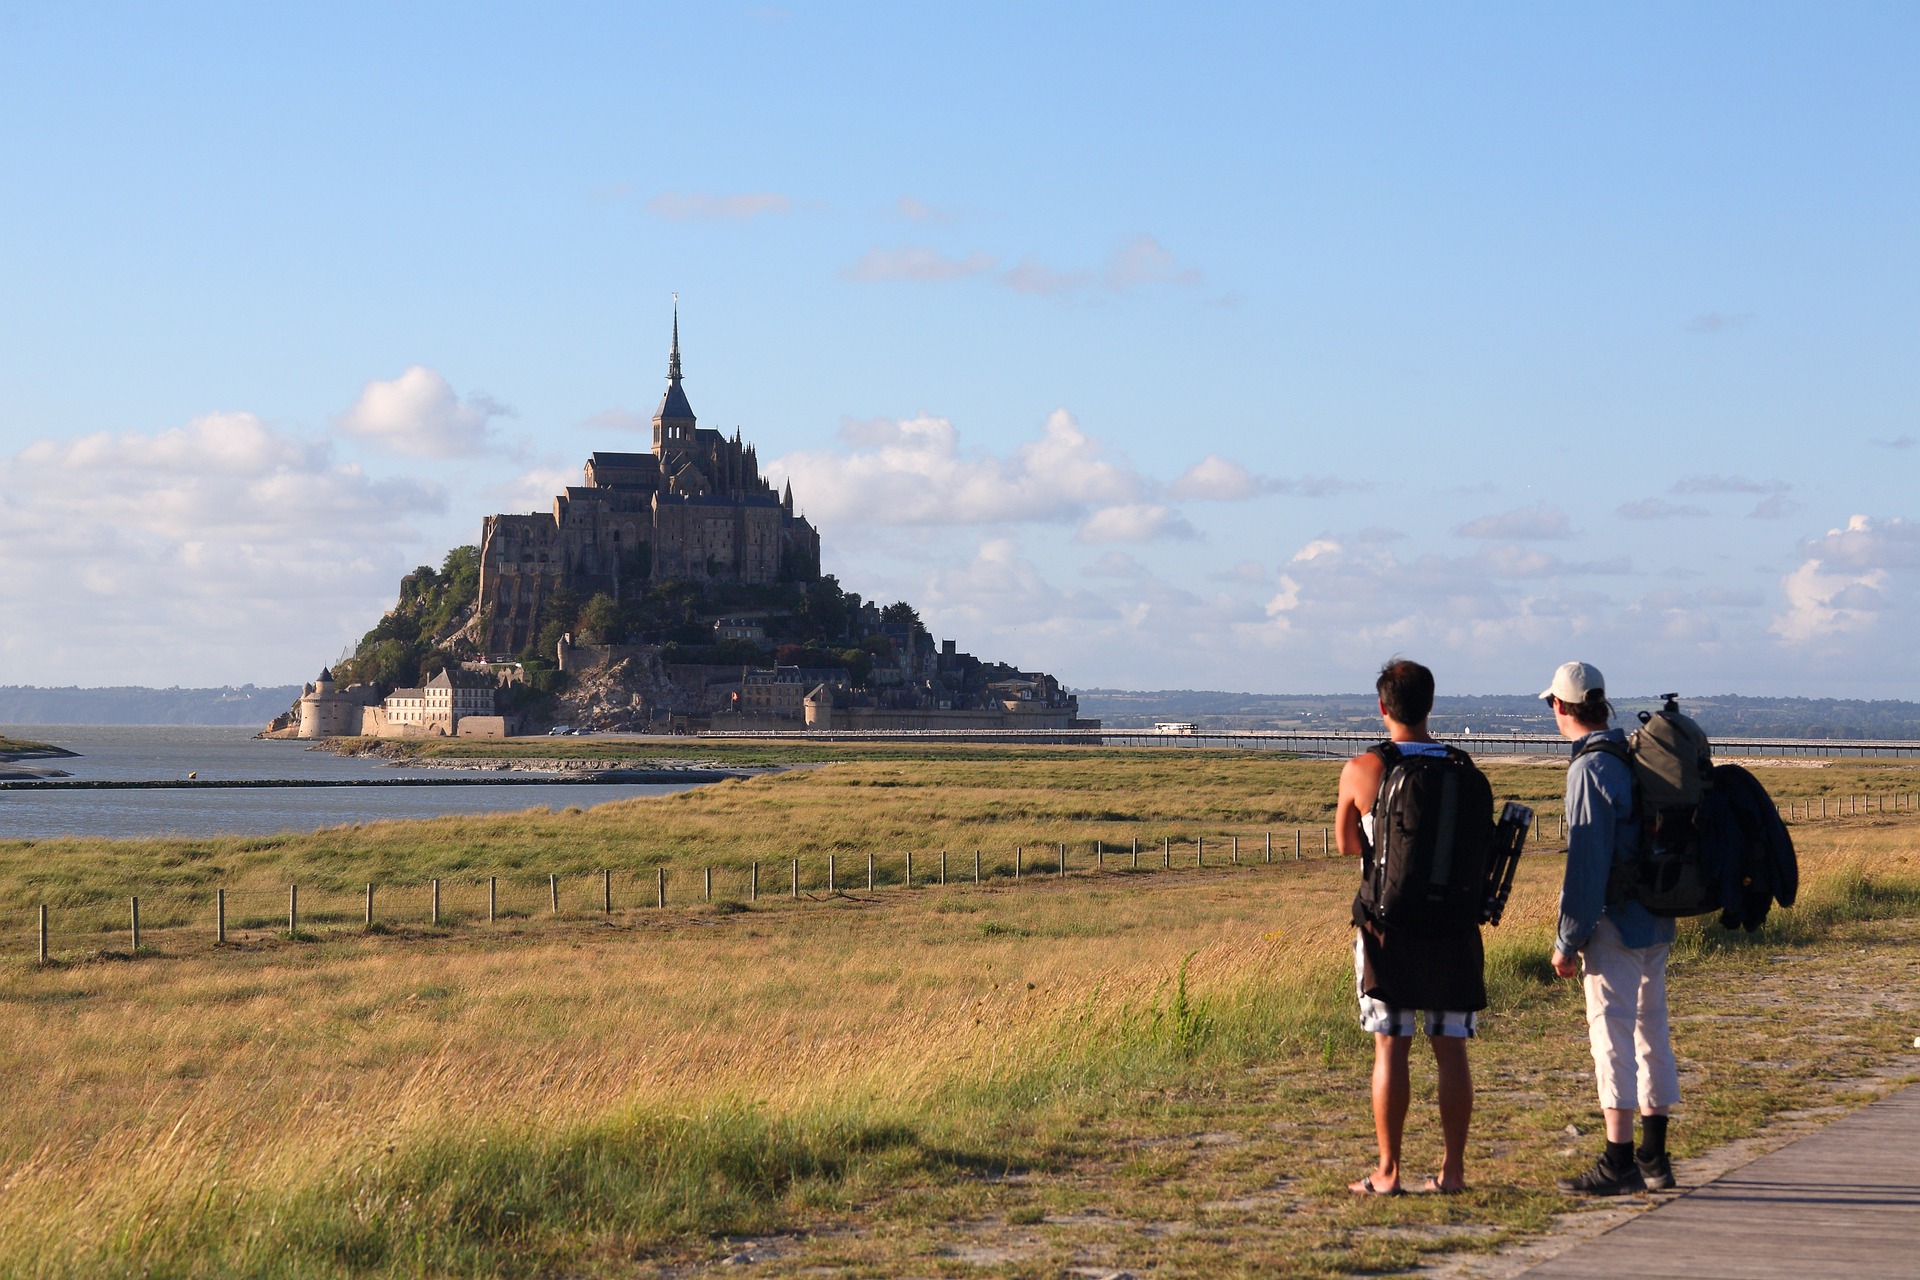 Documentaire sur arte : dans la baie du Mont-Saint-Michel, la rivalité normando-bretonne